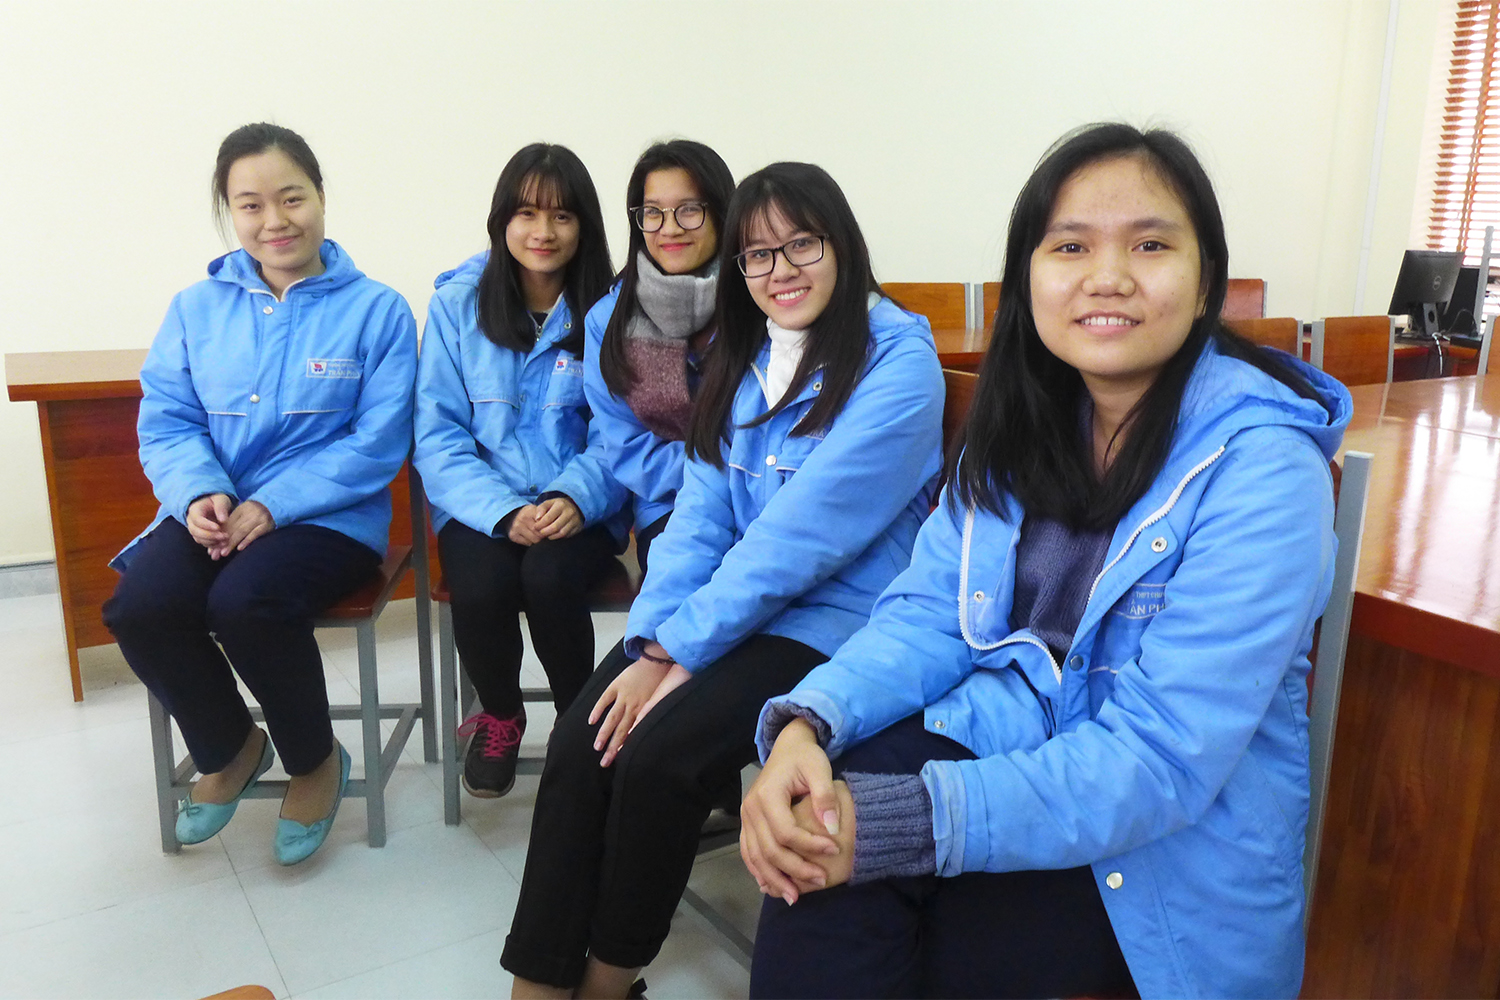 De gauche à droite : Hai Linh, Ngoc Ngo, Thuy Hoceng, Thuoi Nguyen, Dung Do, toutes élèves en terminale au lycée d’excellence Trân Phu, à Haiphong.